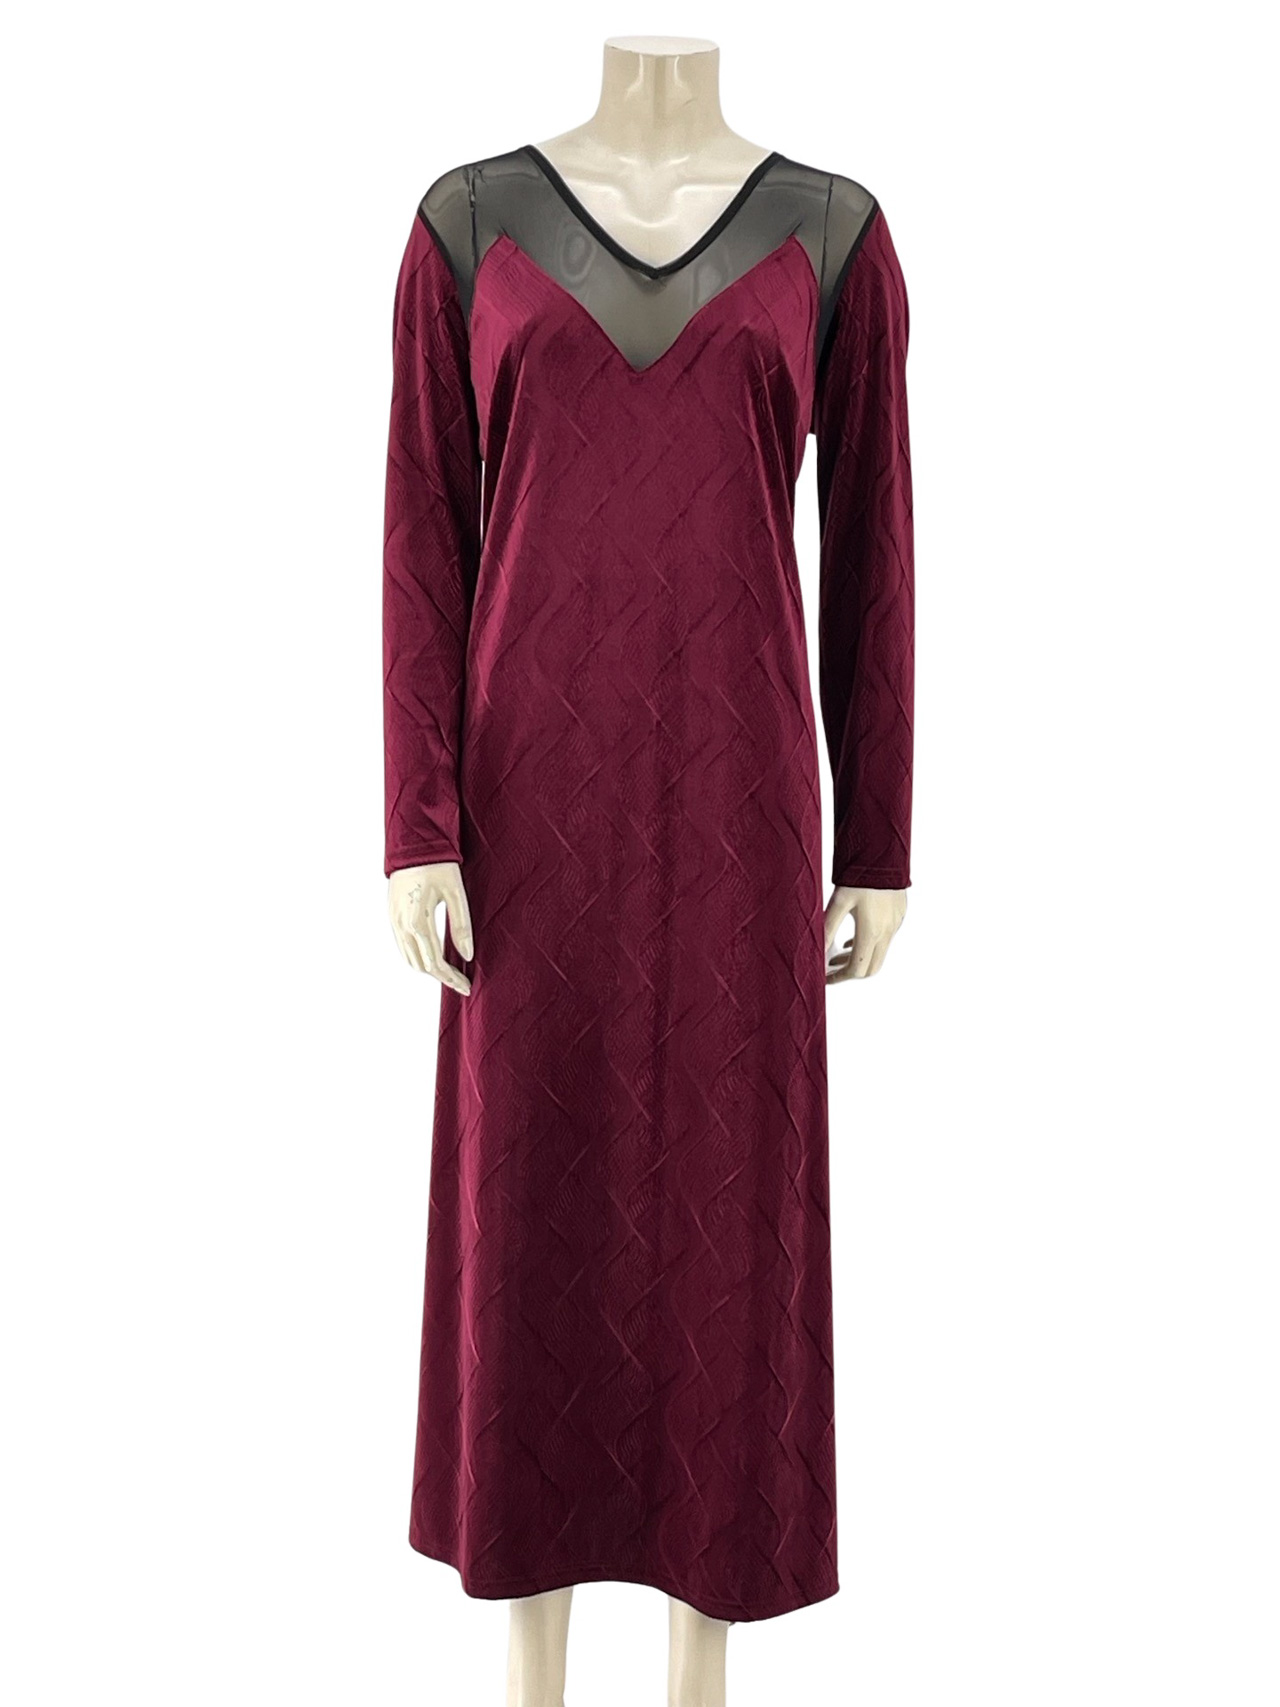 Φόρεμα βελούδο maxi με διαφάνεια κωδ. 92874 μπροστινή όψη